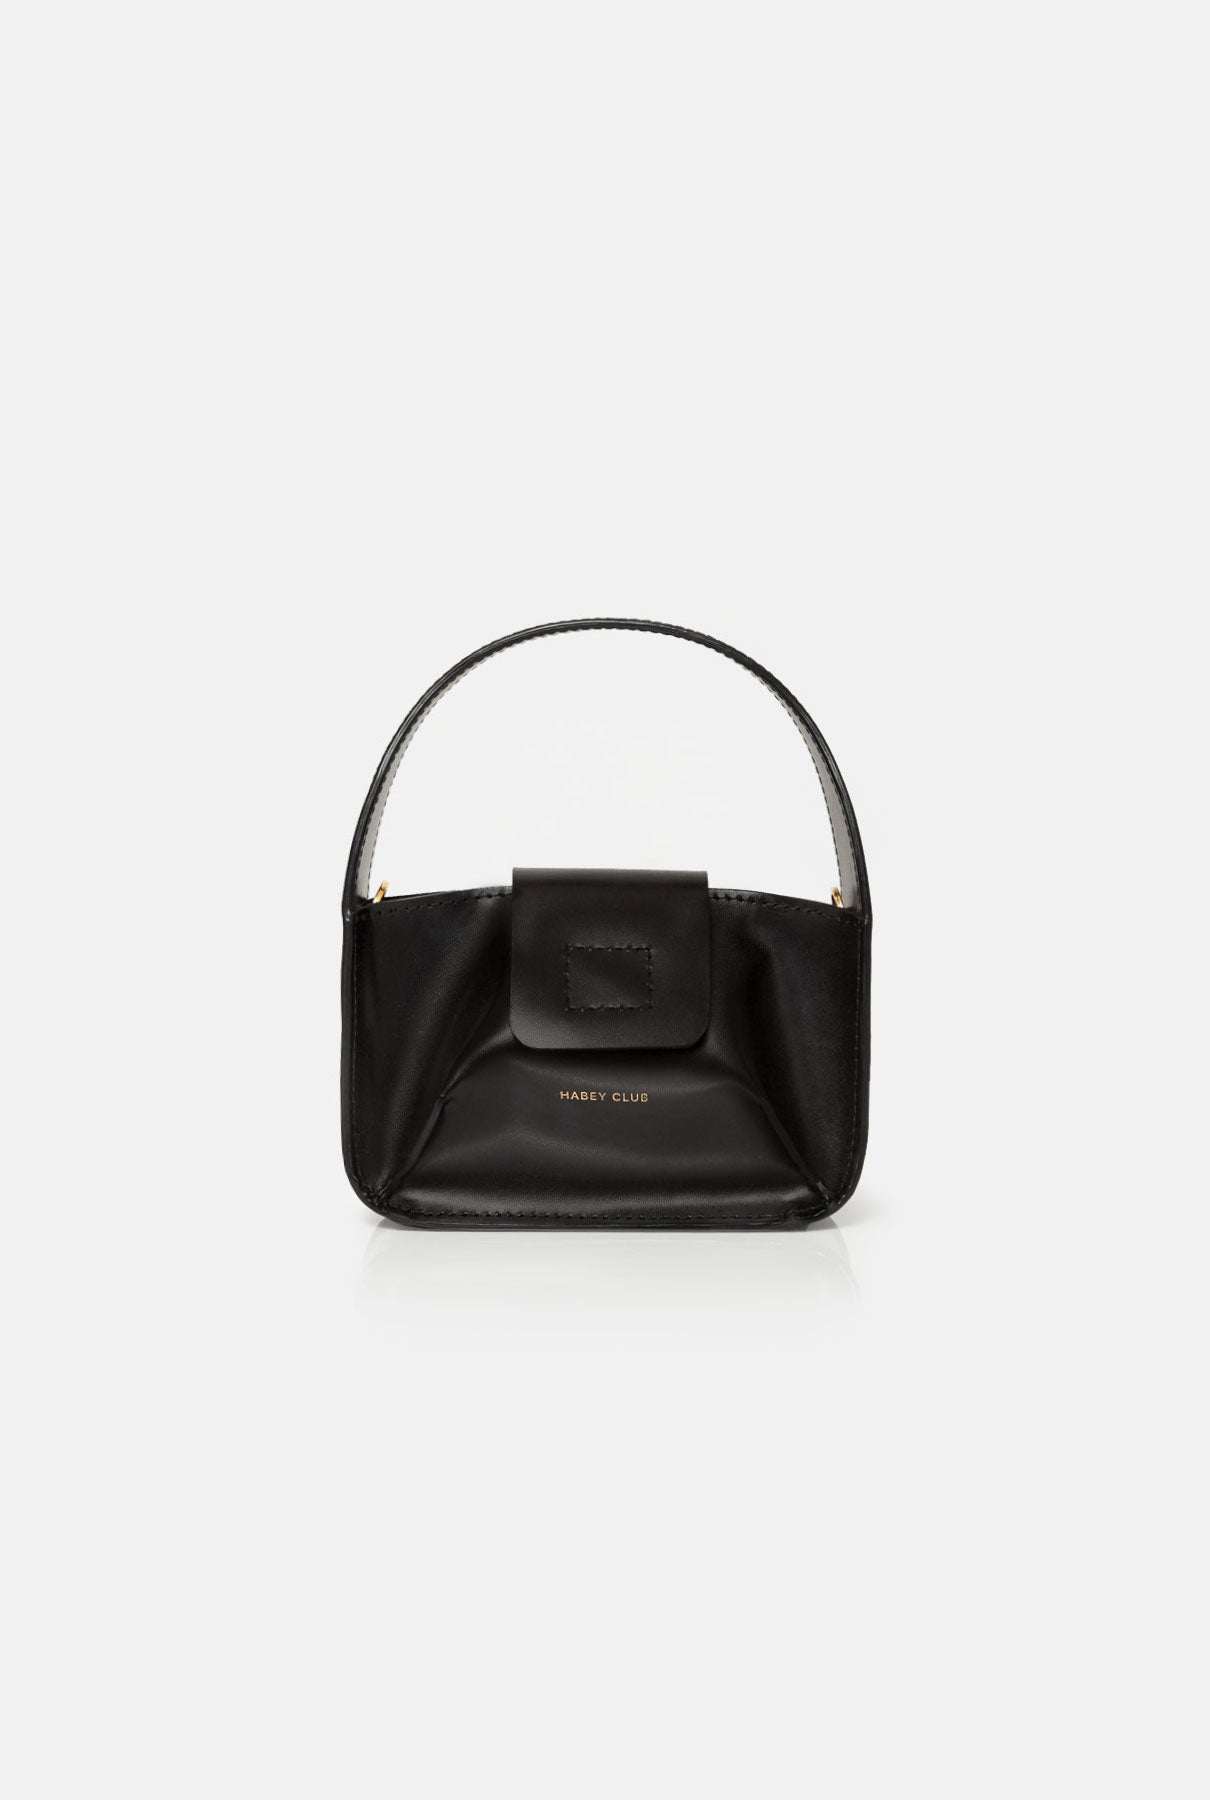 Black Bowl minibag. Pre-Order bag Habey Club